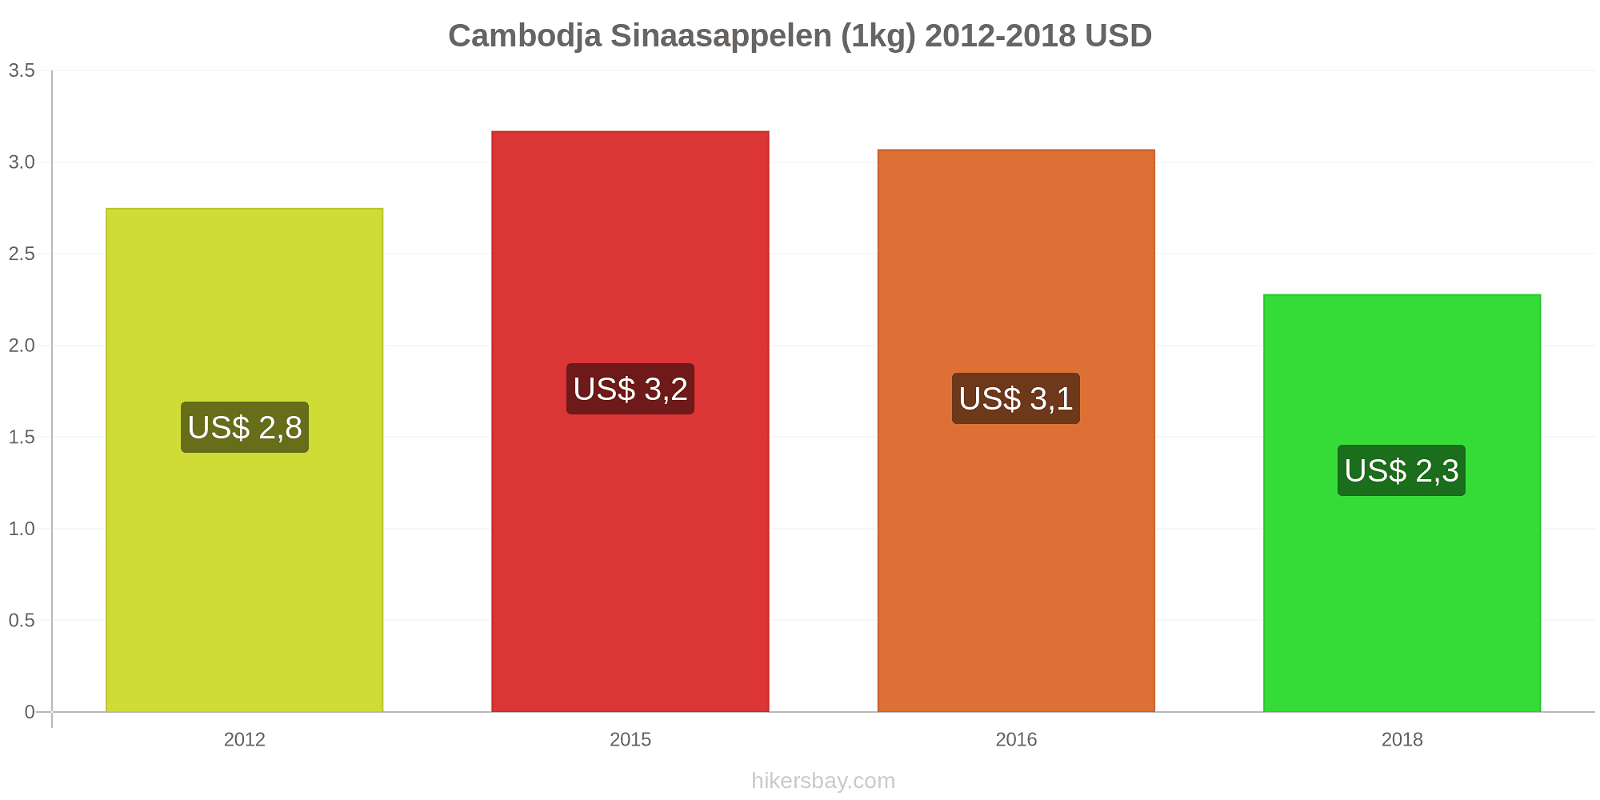 Cambodja prijswijzigingen Sinaasappels (1kg) hikersbay.com